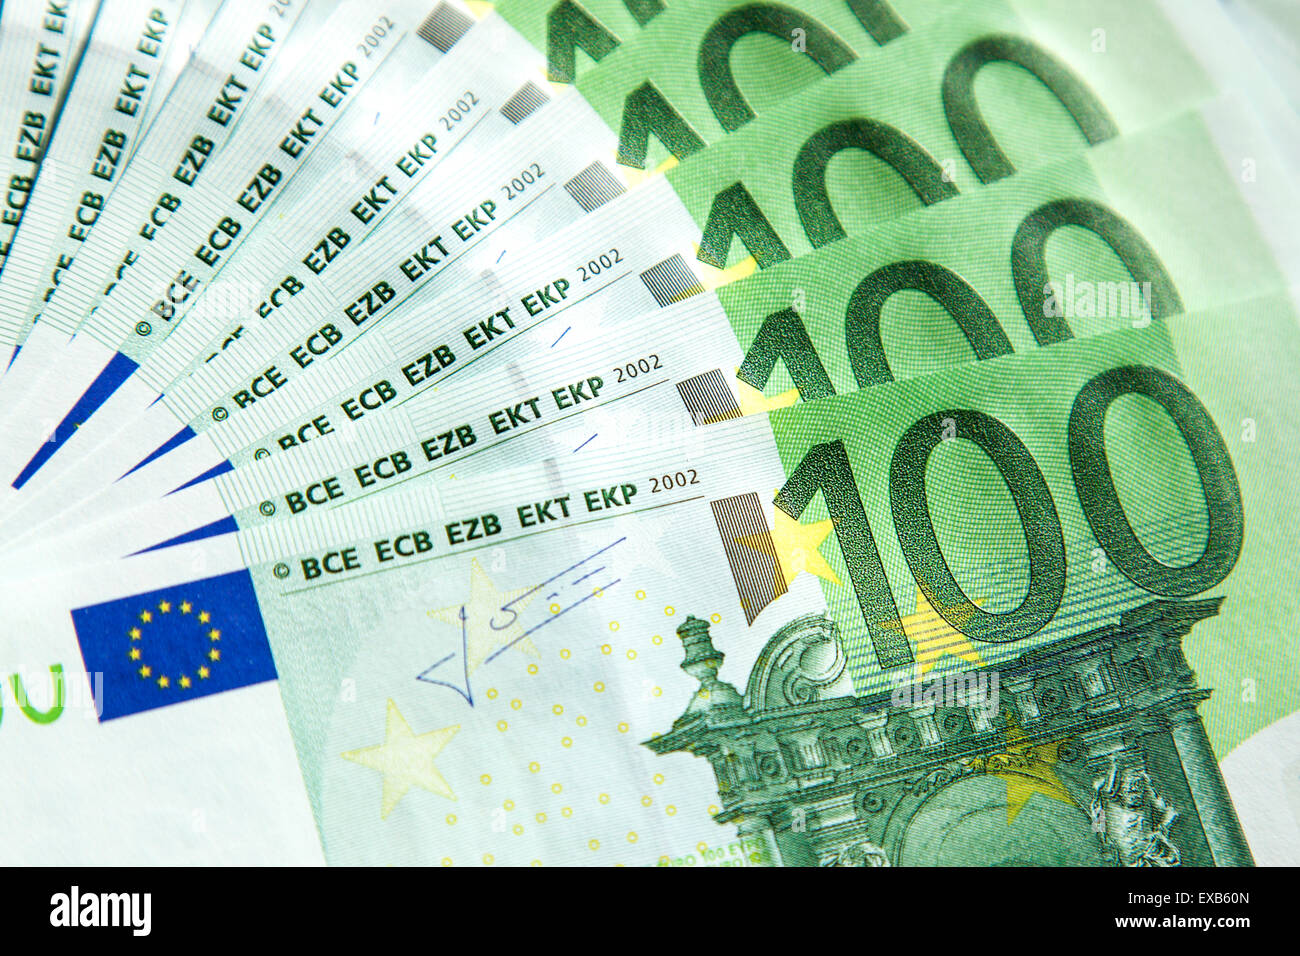 100 Euro notes Stock Photo